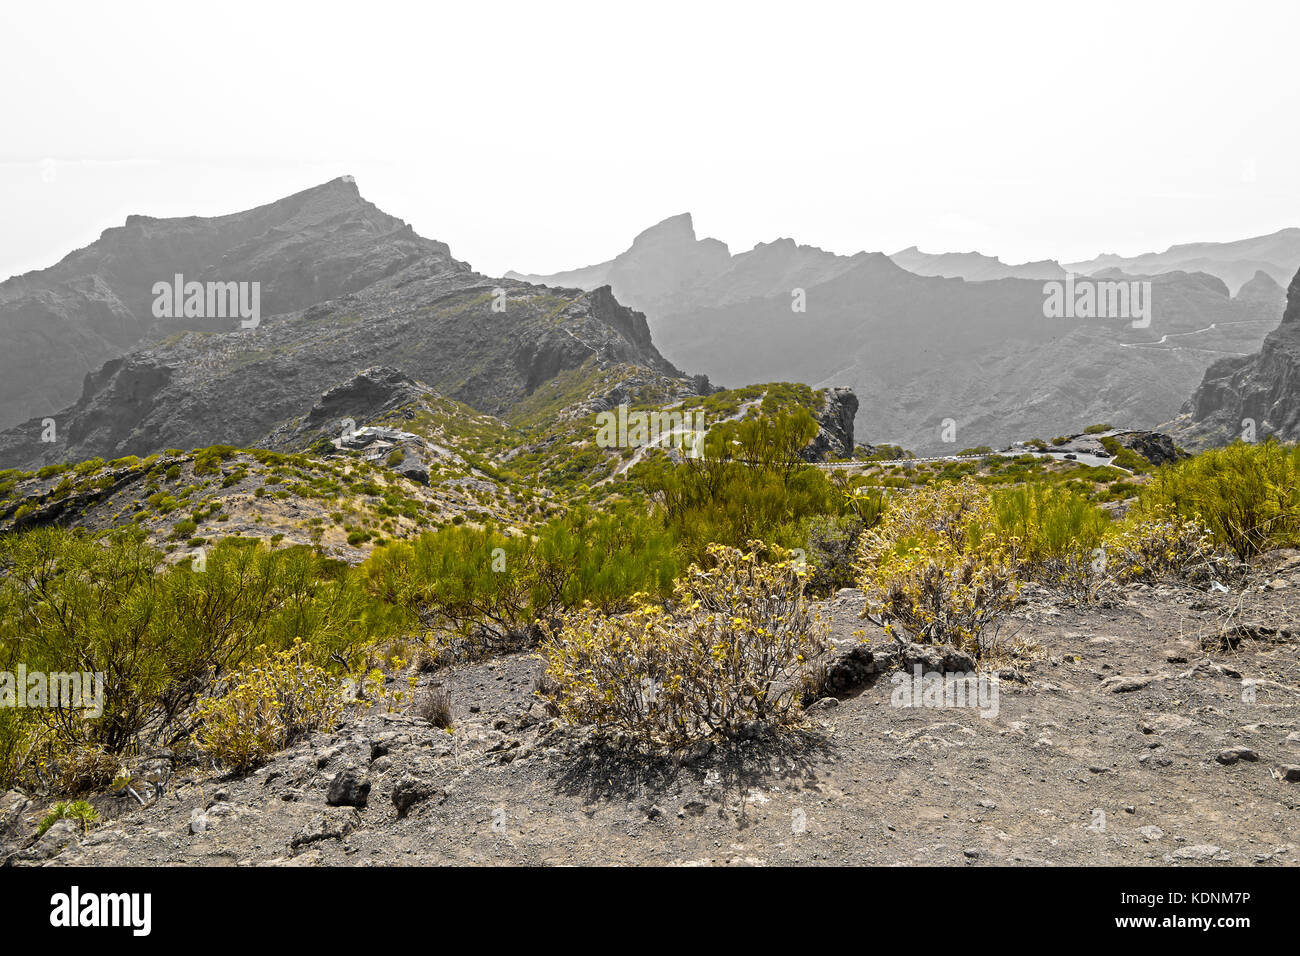 Typische Vegetation der Agave und Wüste Kaktus, in den Bergen von Teneriffa, Kanarische Inseln, Spanien Stockfoto